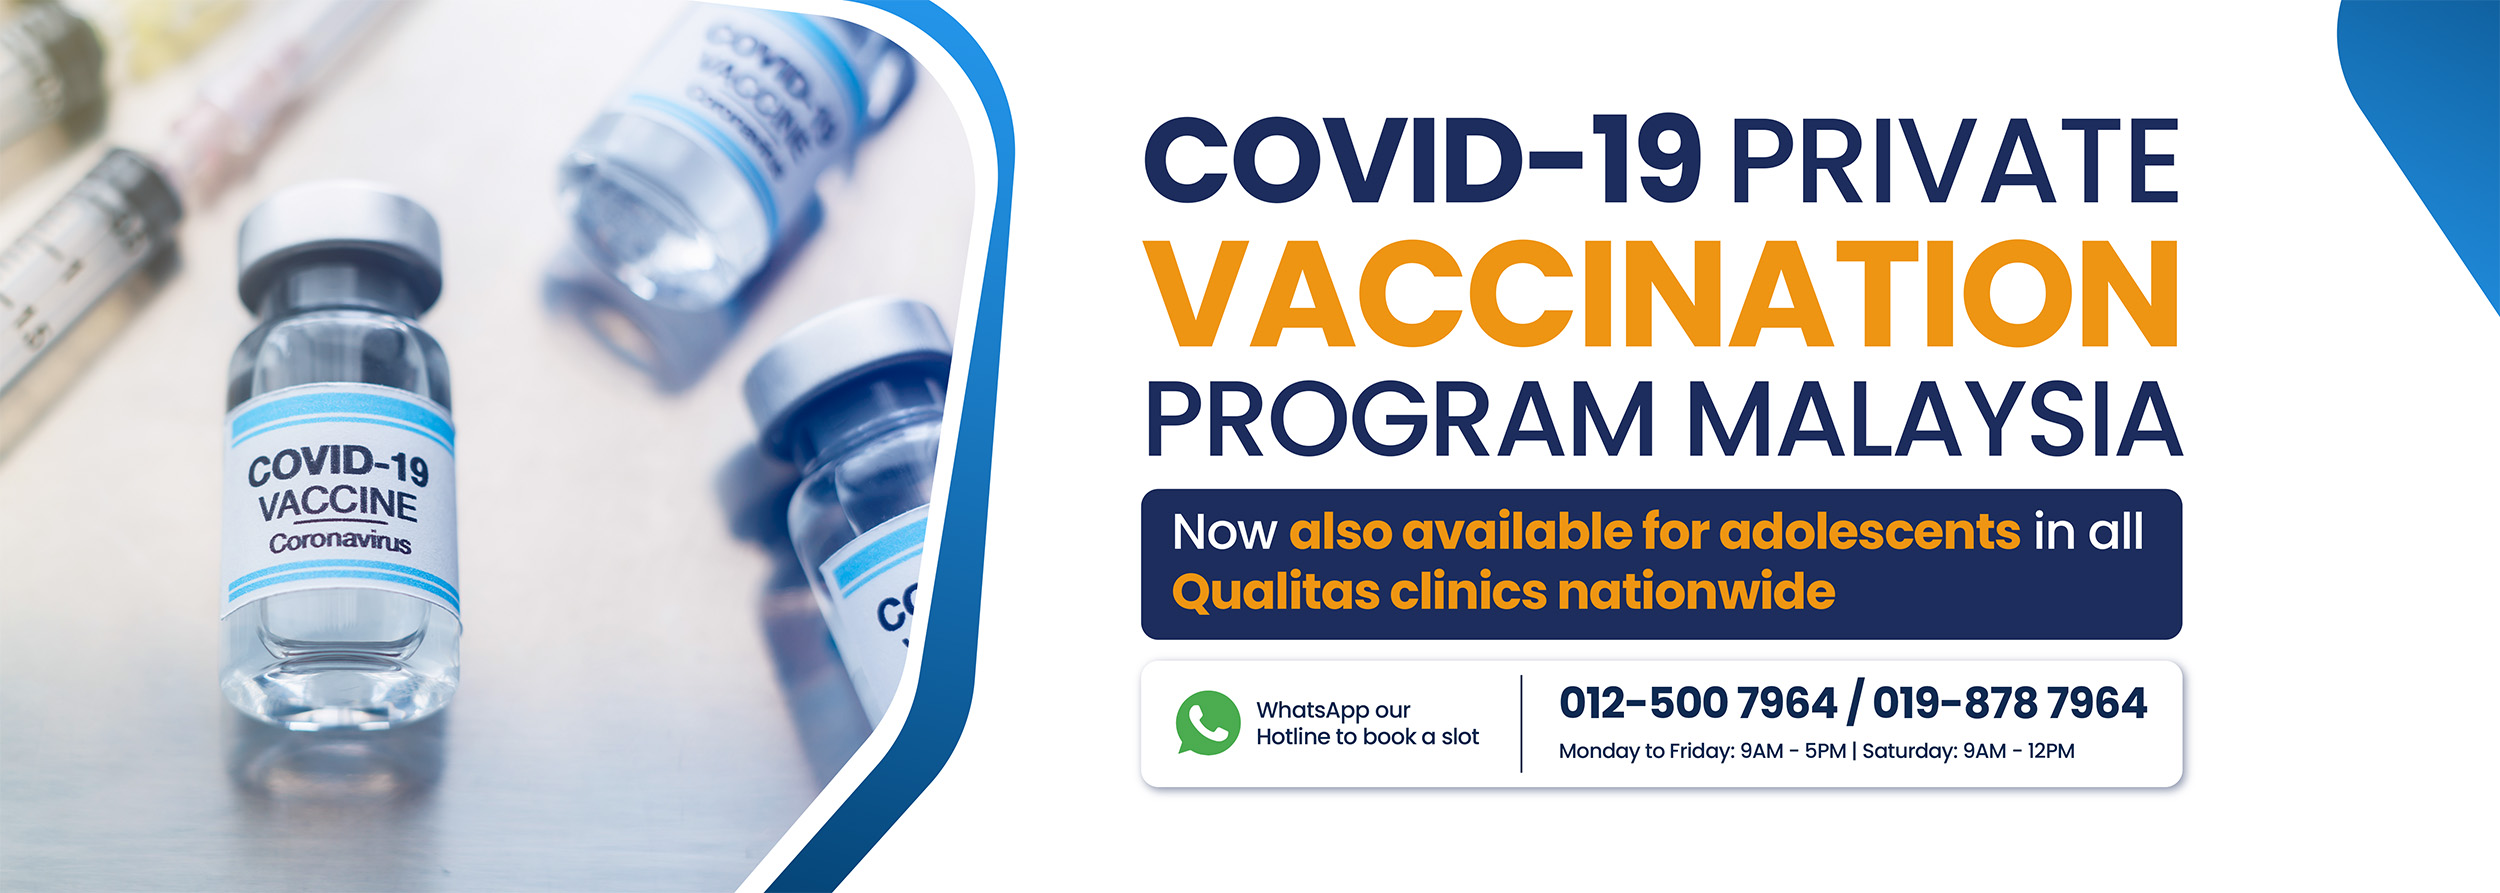 COVID-19 Private Vaccination in Malaysia